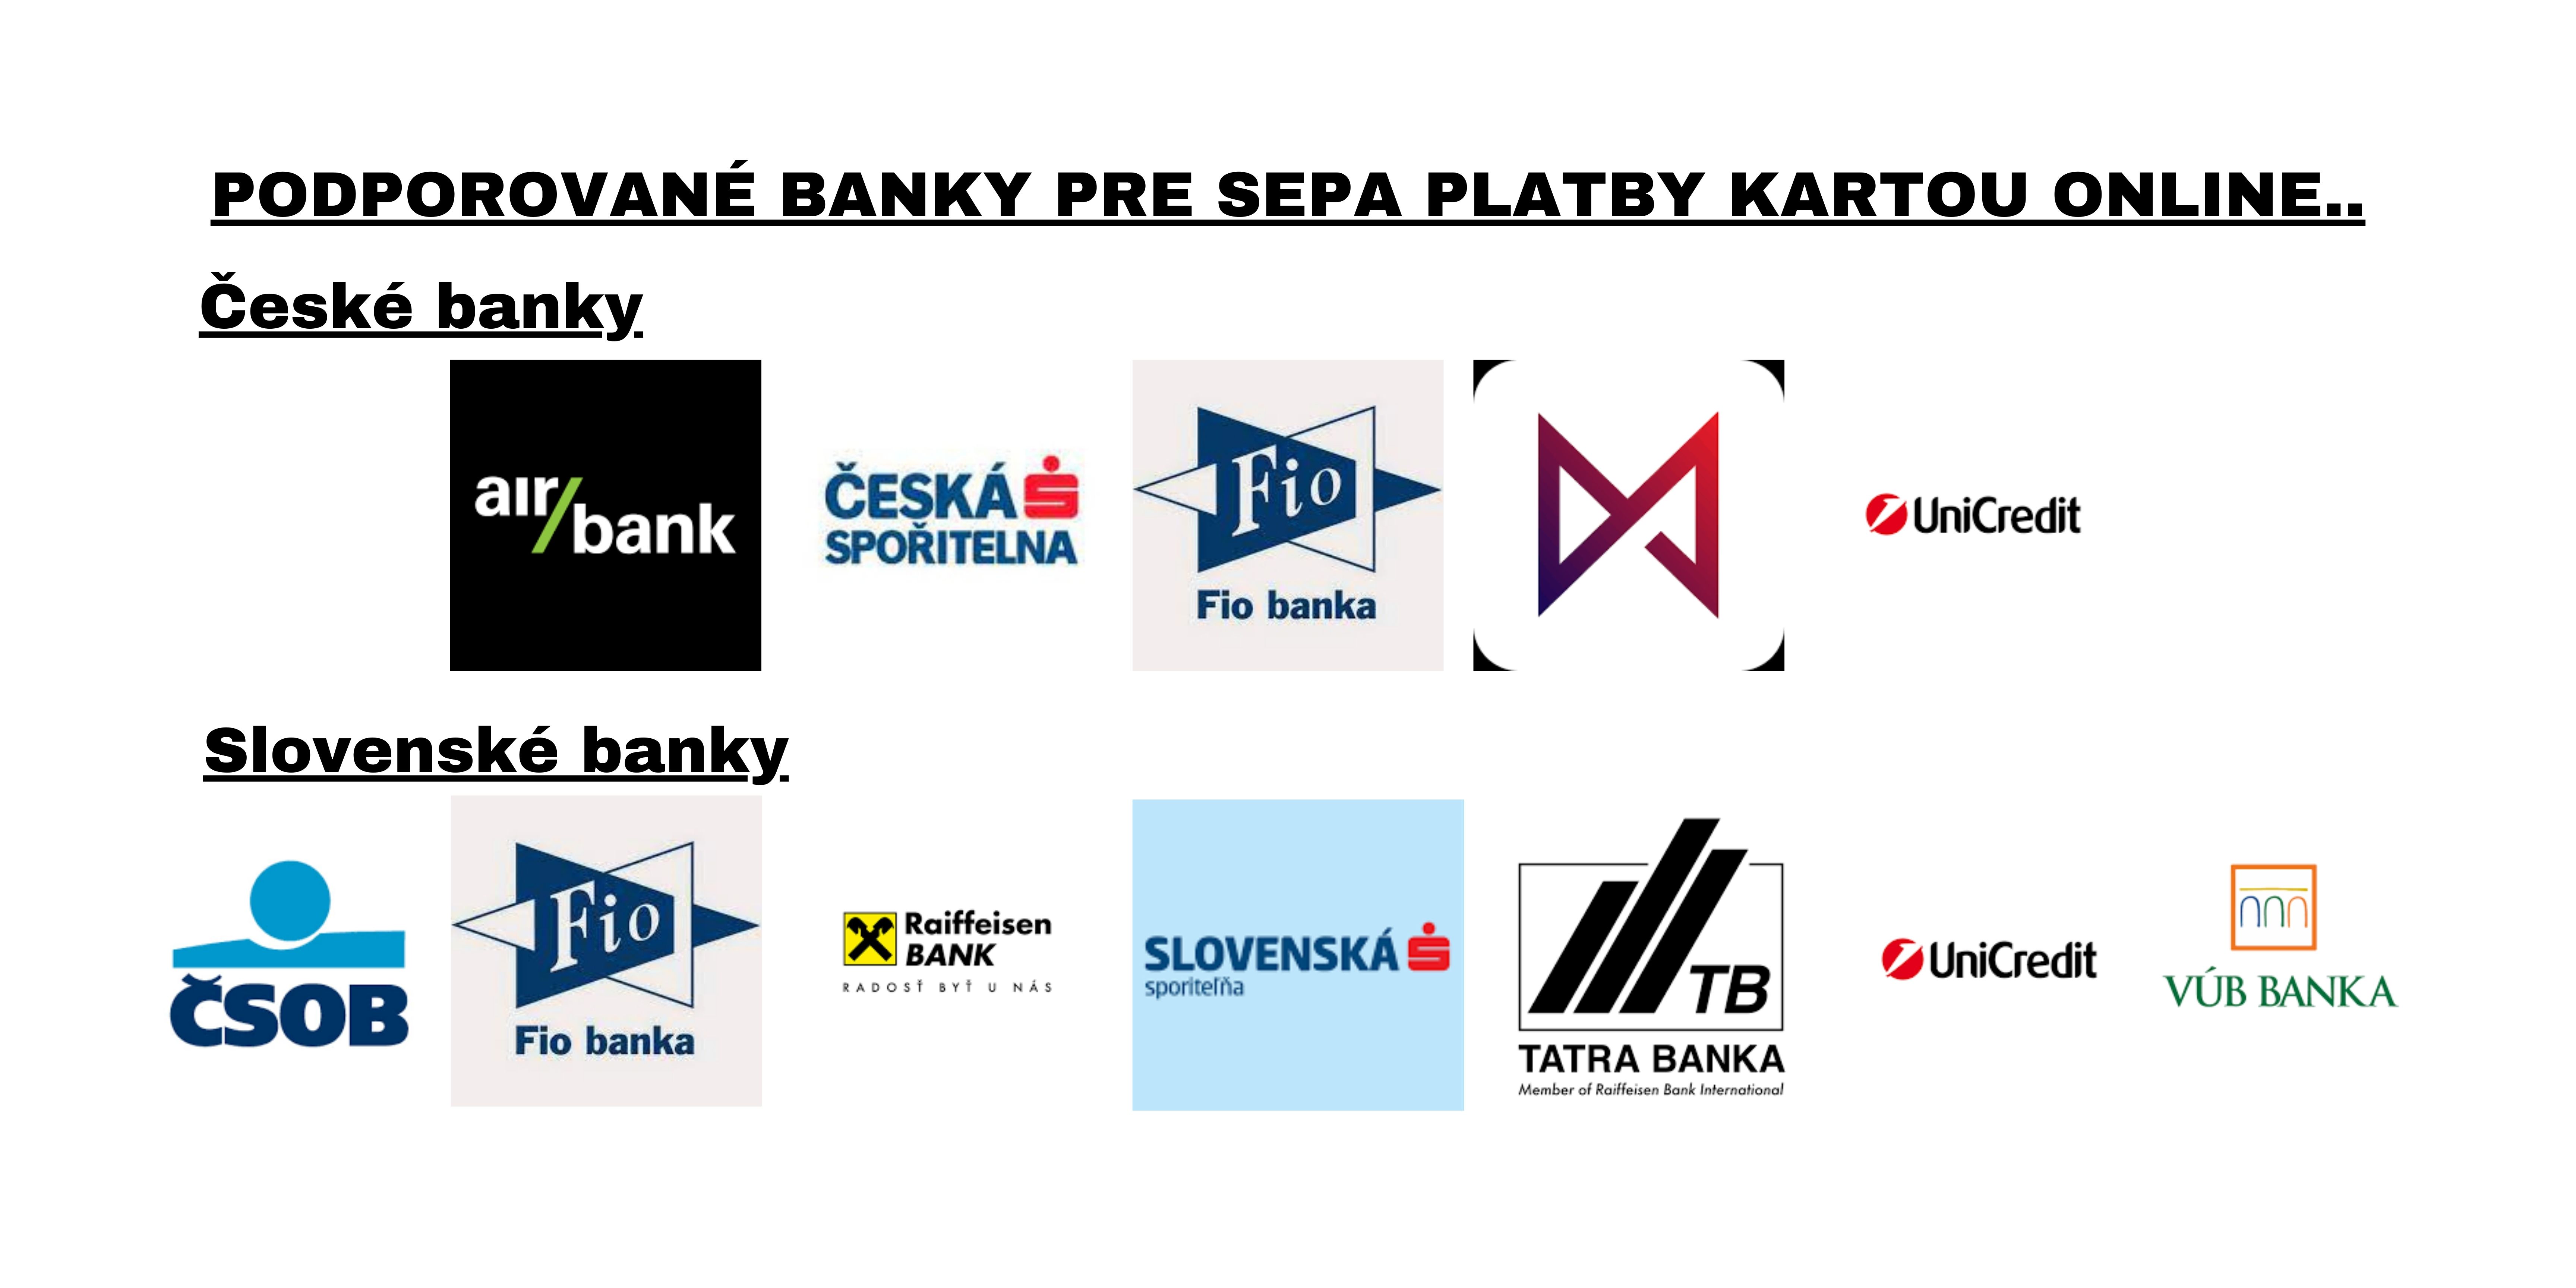 Podporované banky pre SEPA platby kartou online...